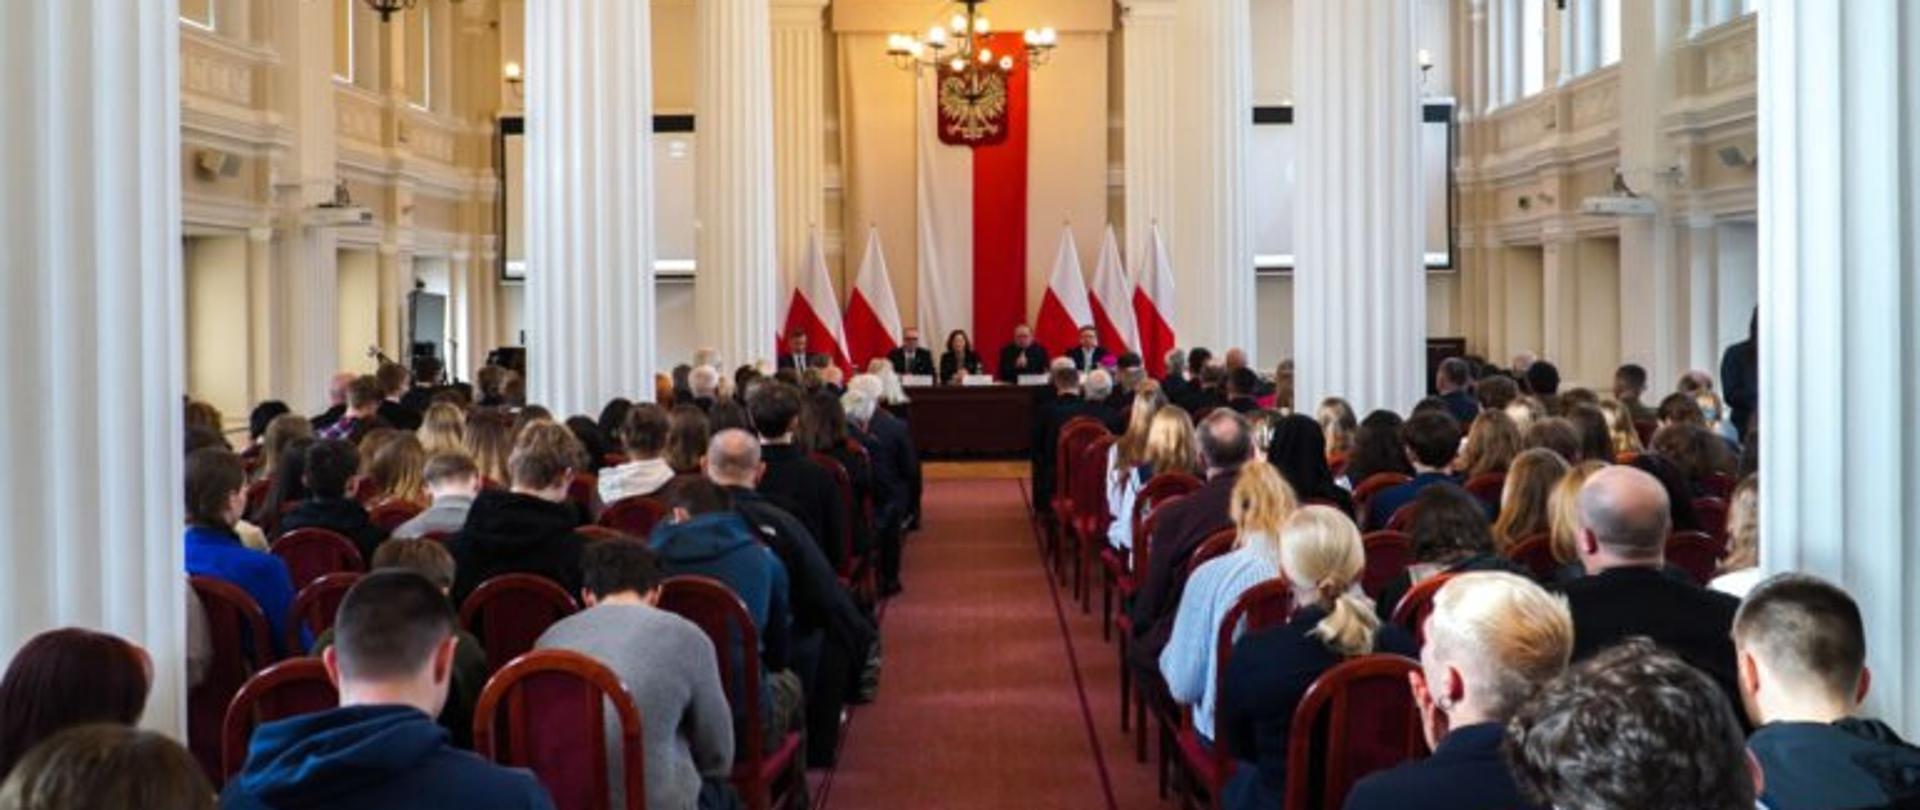 Uczestnicy konferencji dotyczącej arcybiskupa Tokarczuka zgromadzeni w sali kolumnowej Podkarpackiego Urzędu Wojewódzkiego w Rzeszowie, zajmujący miejsca siedzące przodem do stołu prezydialnego, za którym siedzą prelegenci